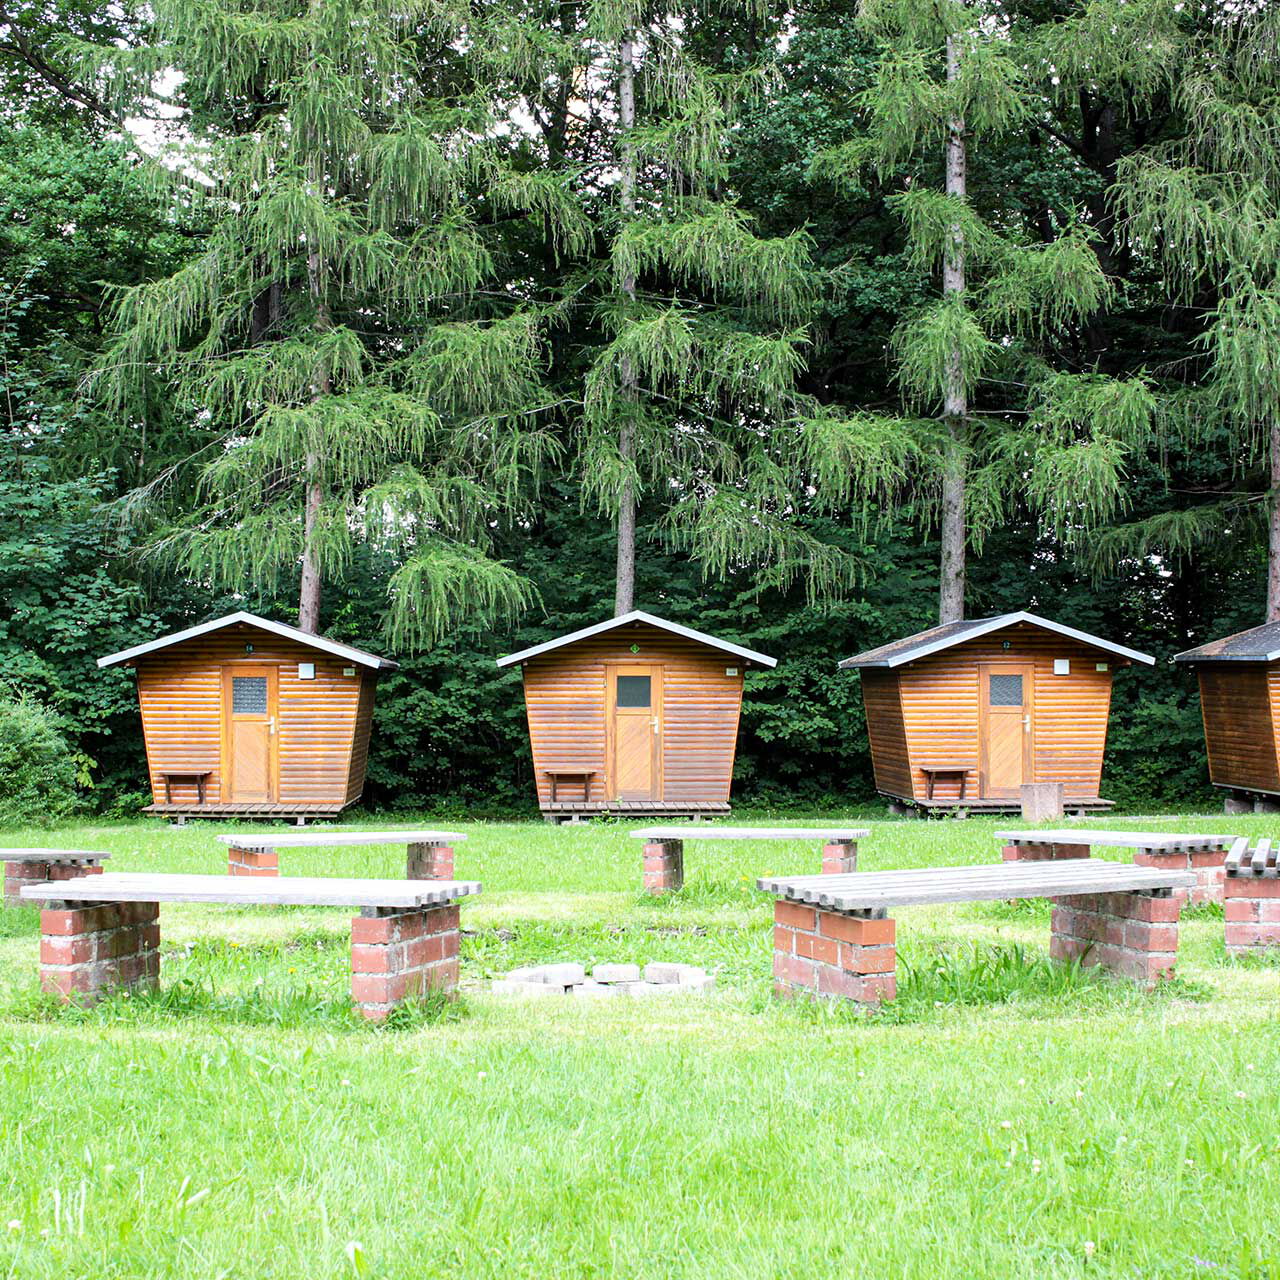 Die Lagerfeuerstelle auf der großen Wiese mit acht festen Sitzbänken und im Vordergrund stehen vier Holzhäuschen.